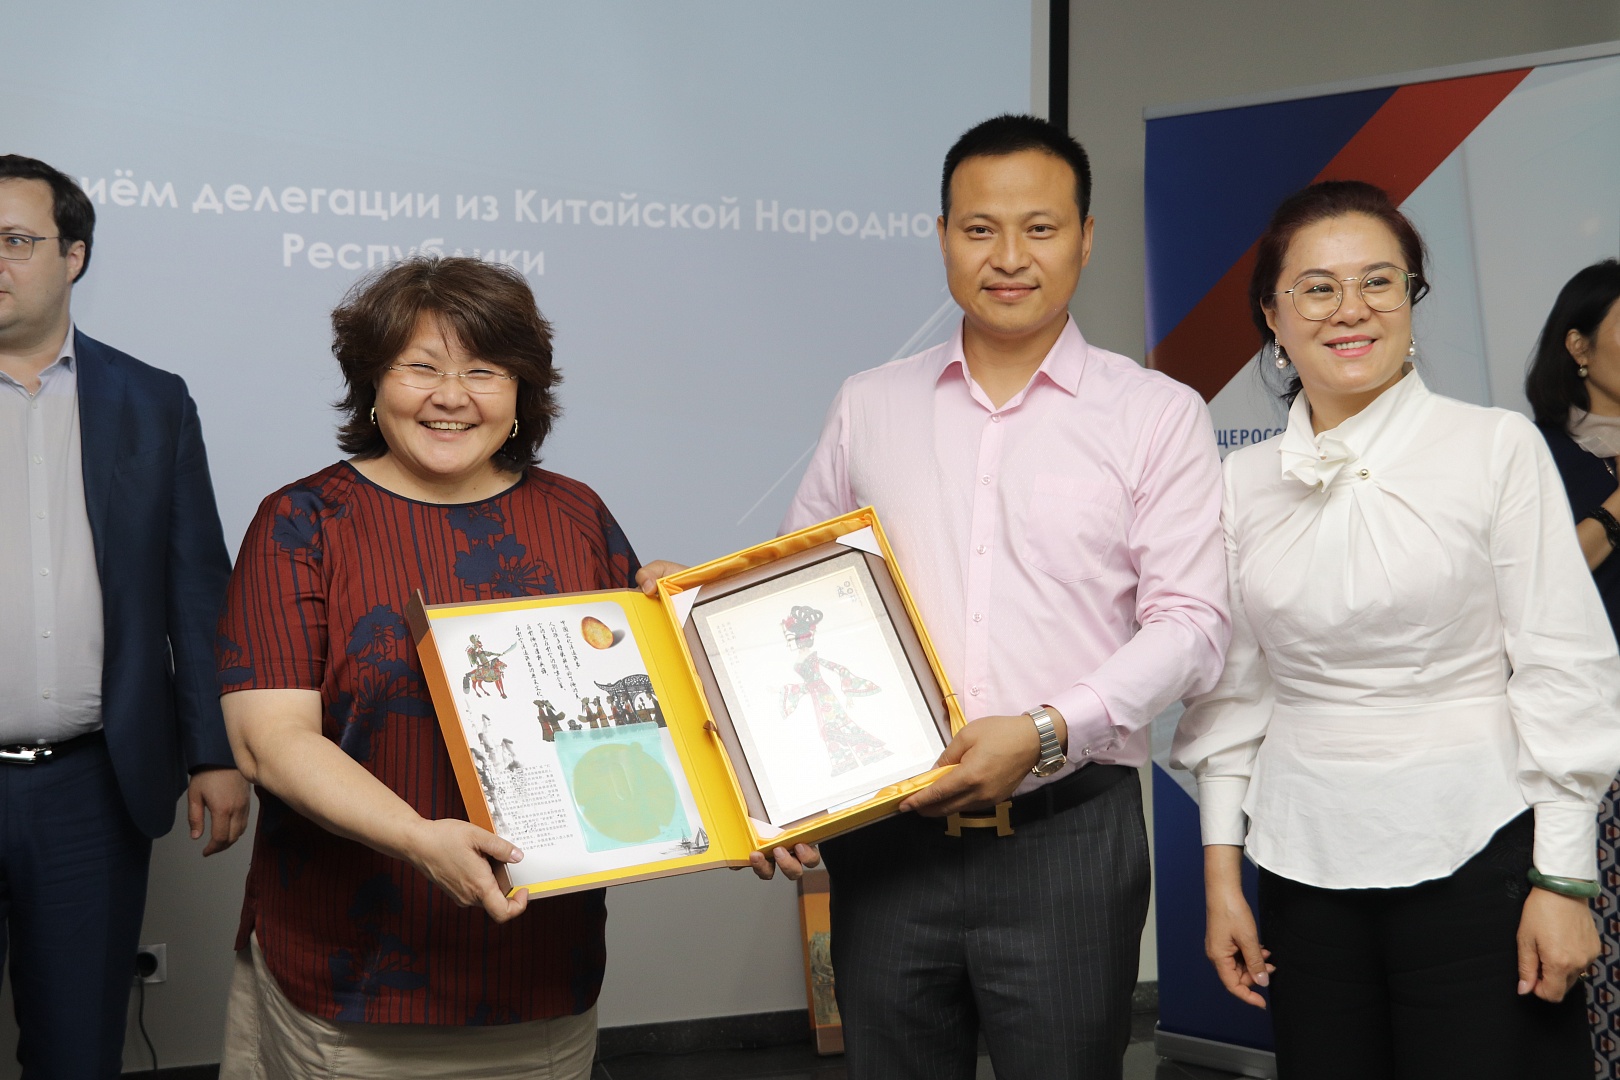 Московская «Деловая Россия» организовала деловой приём делегации из Китайской Народной Республики